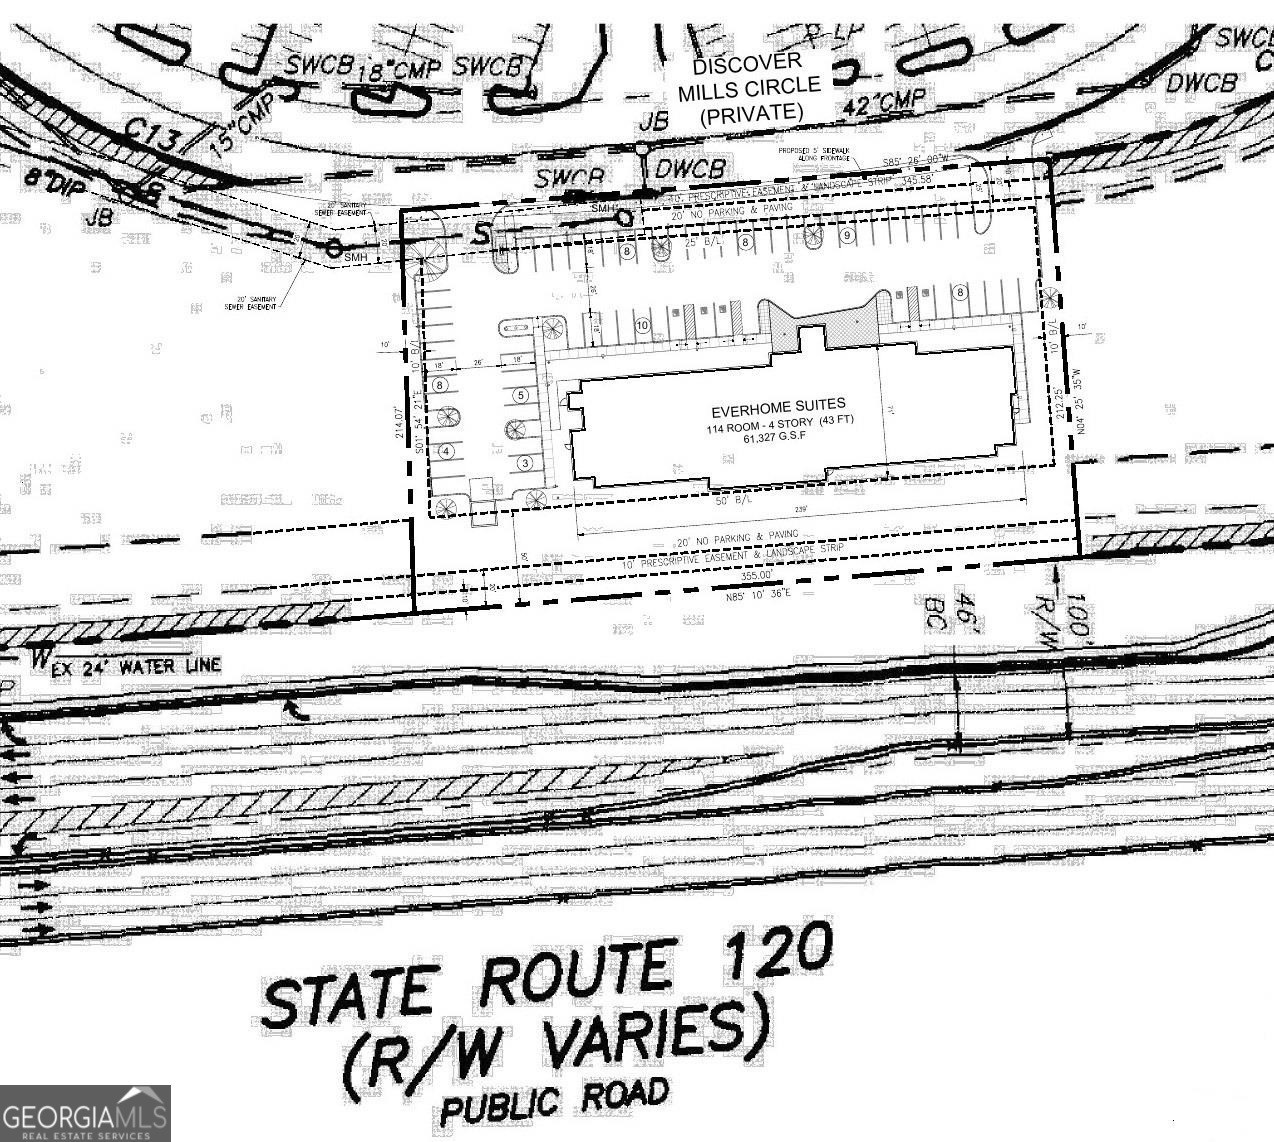 3. 1959 Duluth Highway